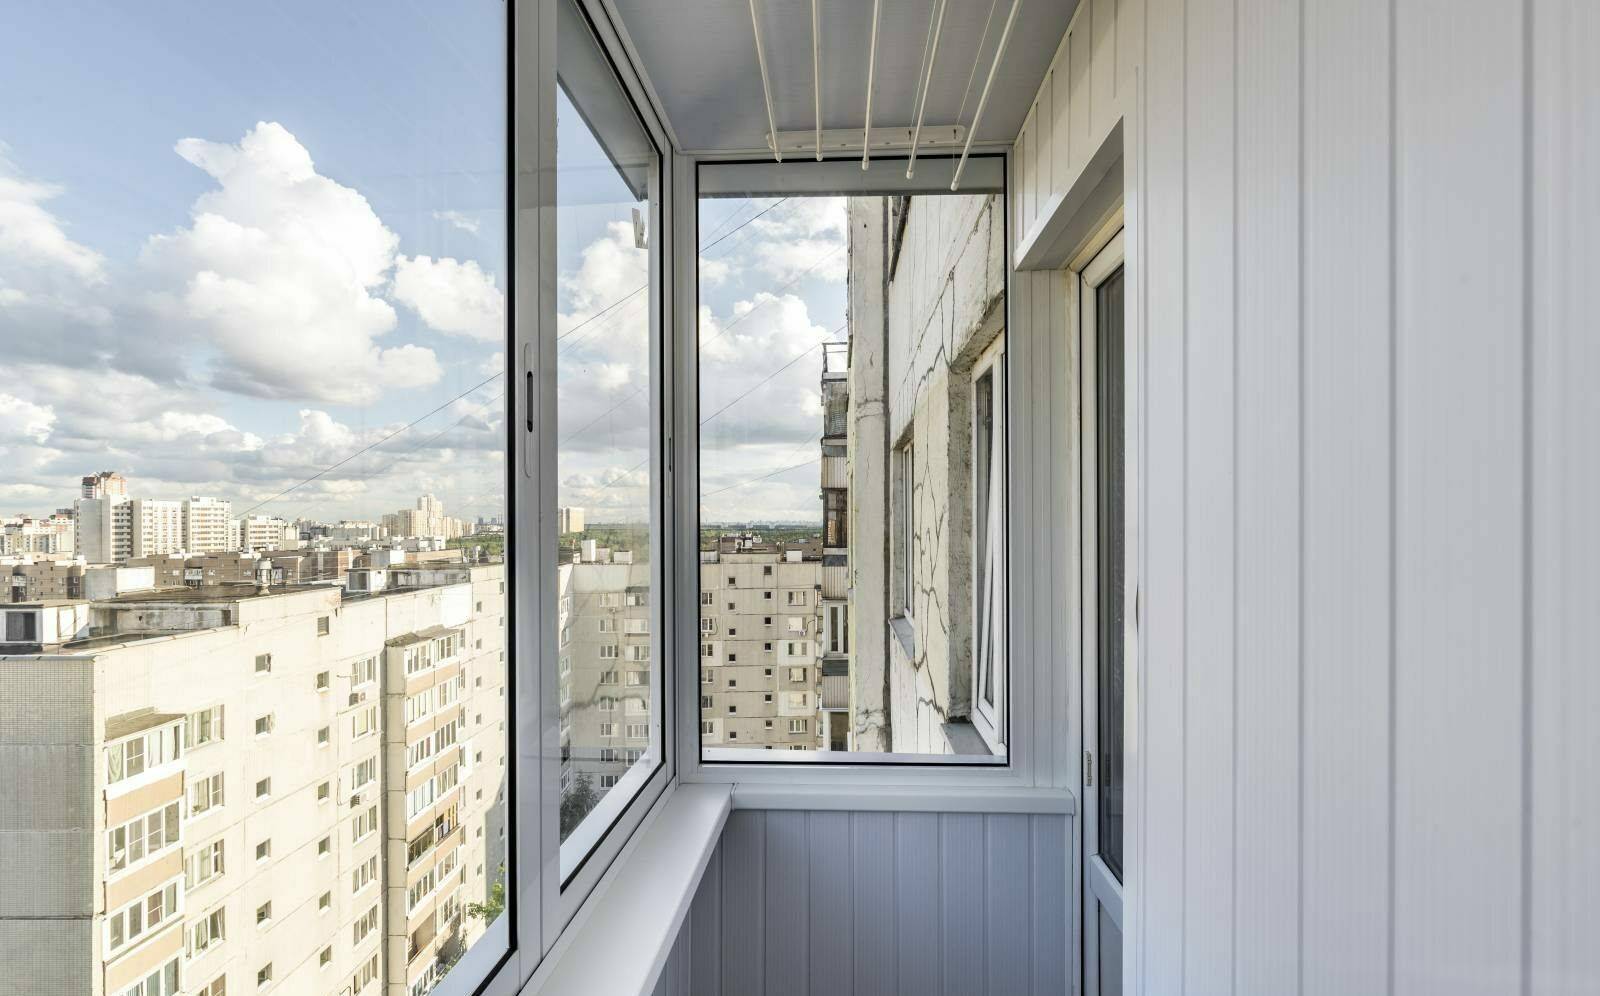 Виды остекления балконов в фото примерах, советы как выбрать профиль и согласовать остекление балкона, достоинства и недостатки раздвижных и распашных окон